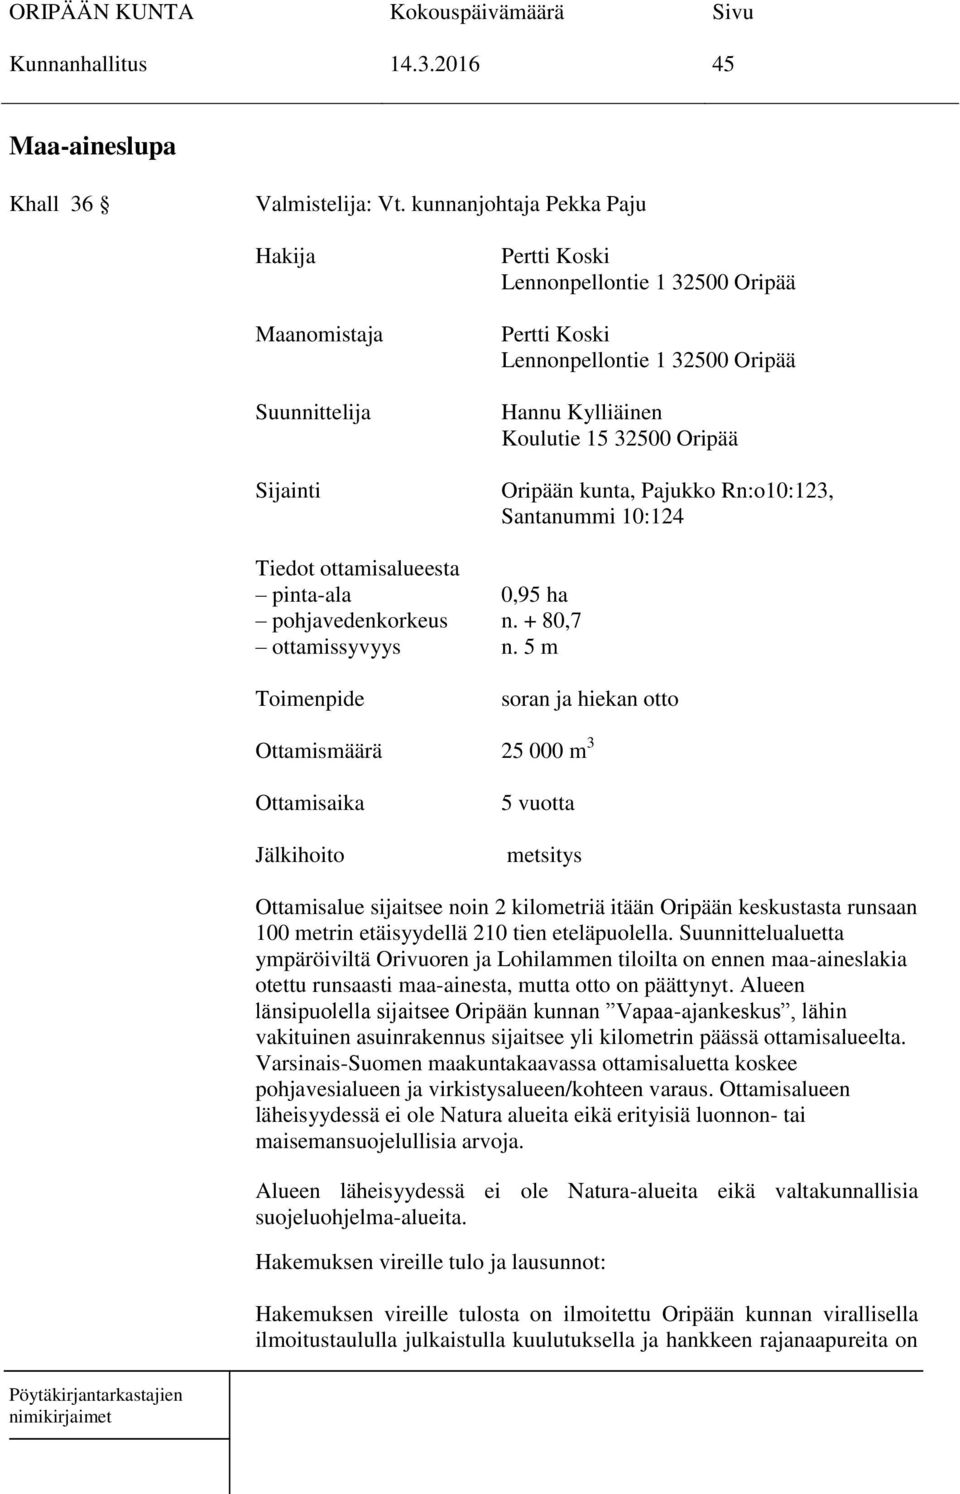 Oripään kunta, Pajukko Rn:o10:123, Santanummi 10:124 Tiedot ottamisalueesta pinta-ala 0,95 ha pohjavedenkorkeus n. + 80,7 ottamissyvyys n.